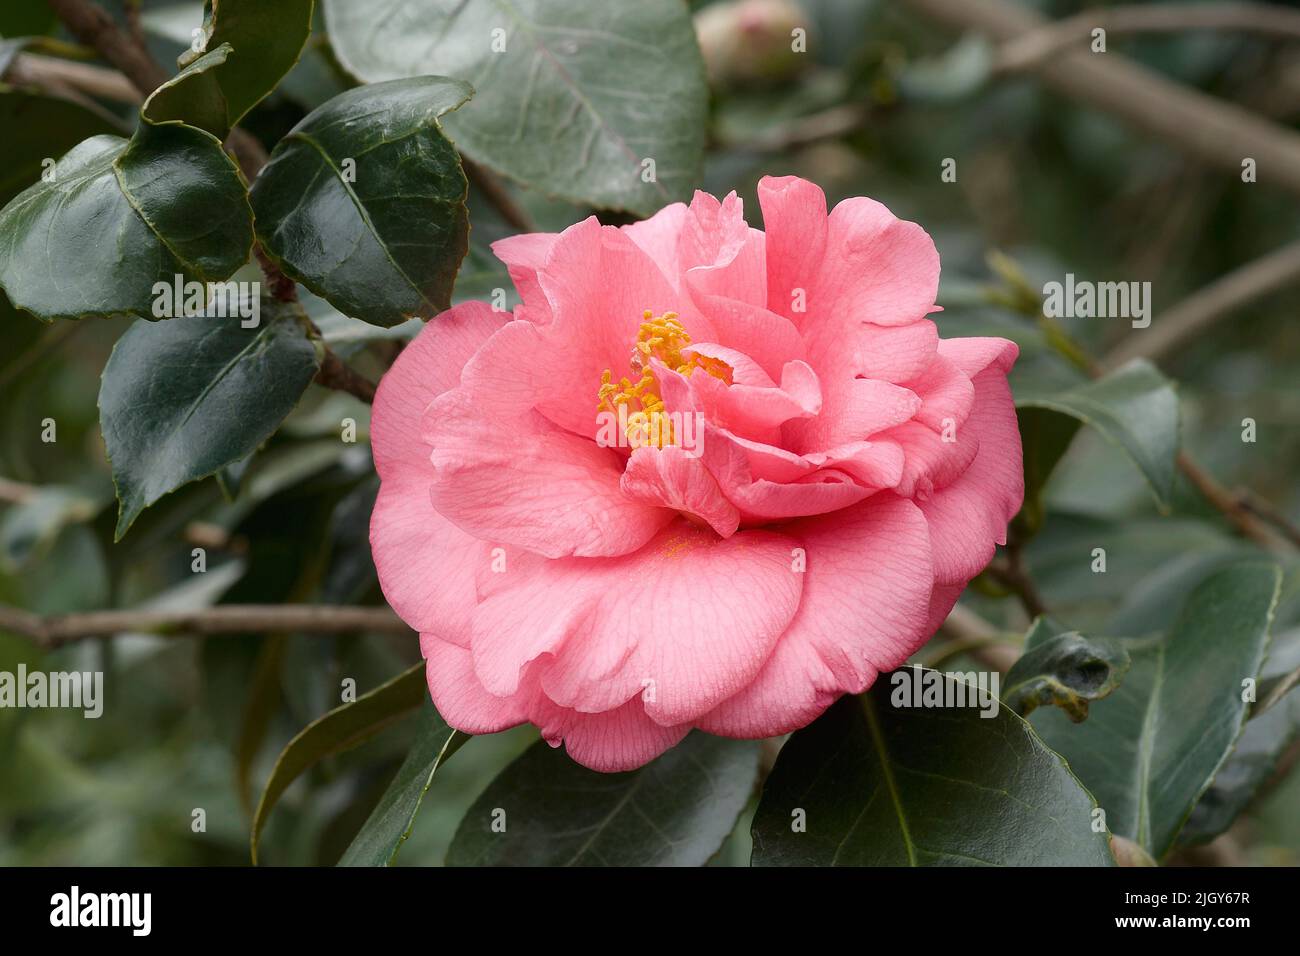 Faith variegated japanese camellia (Camellia japonica 'Faith') Stock Photo